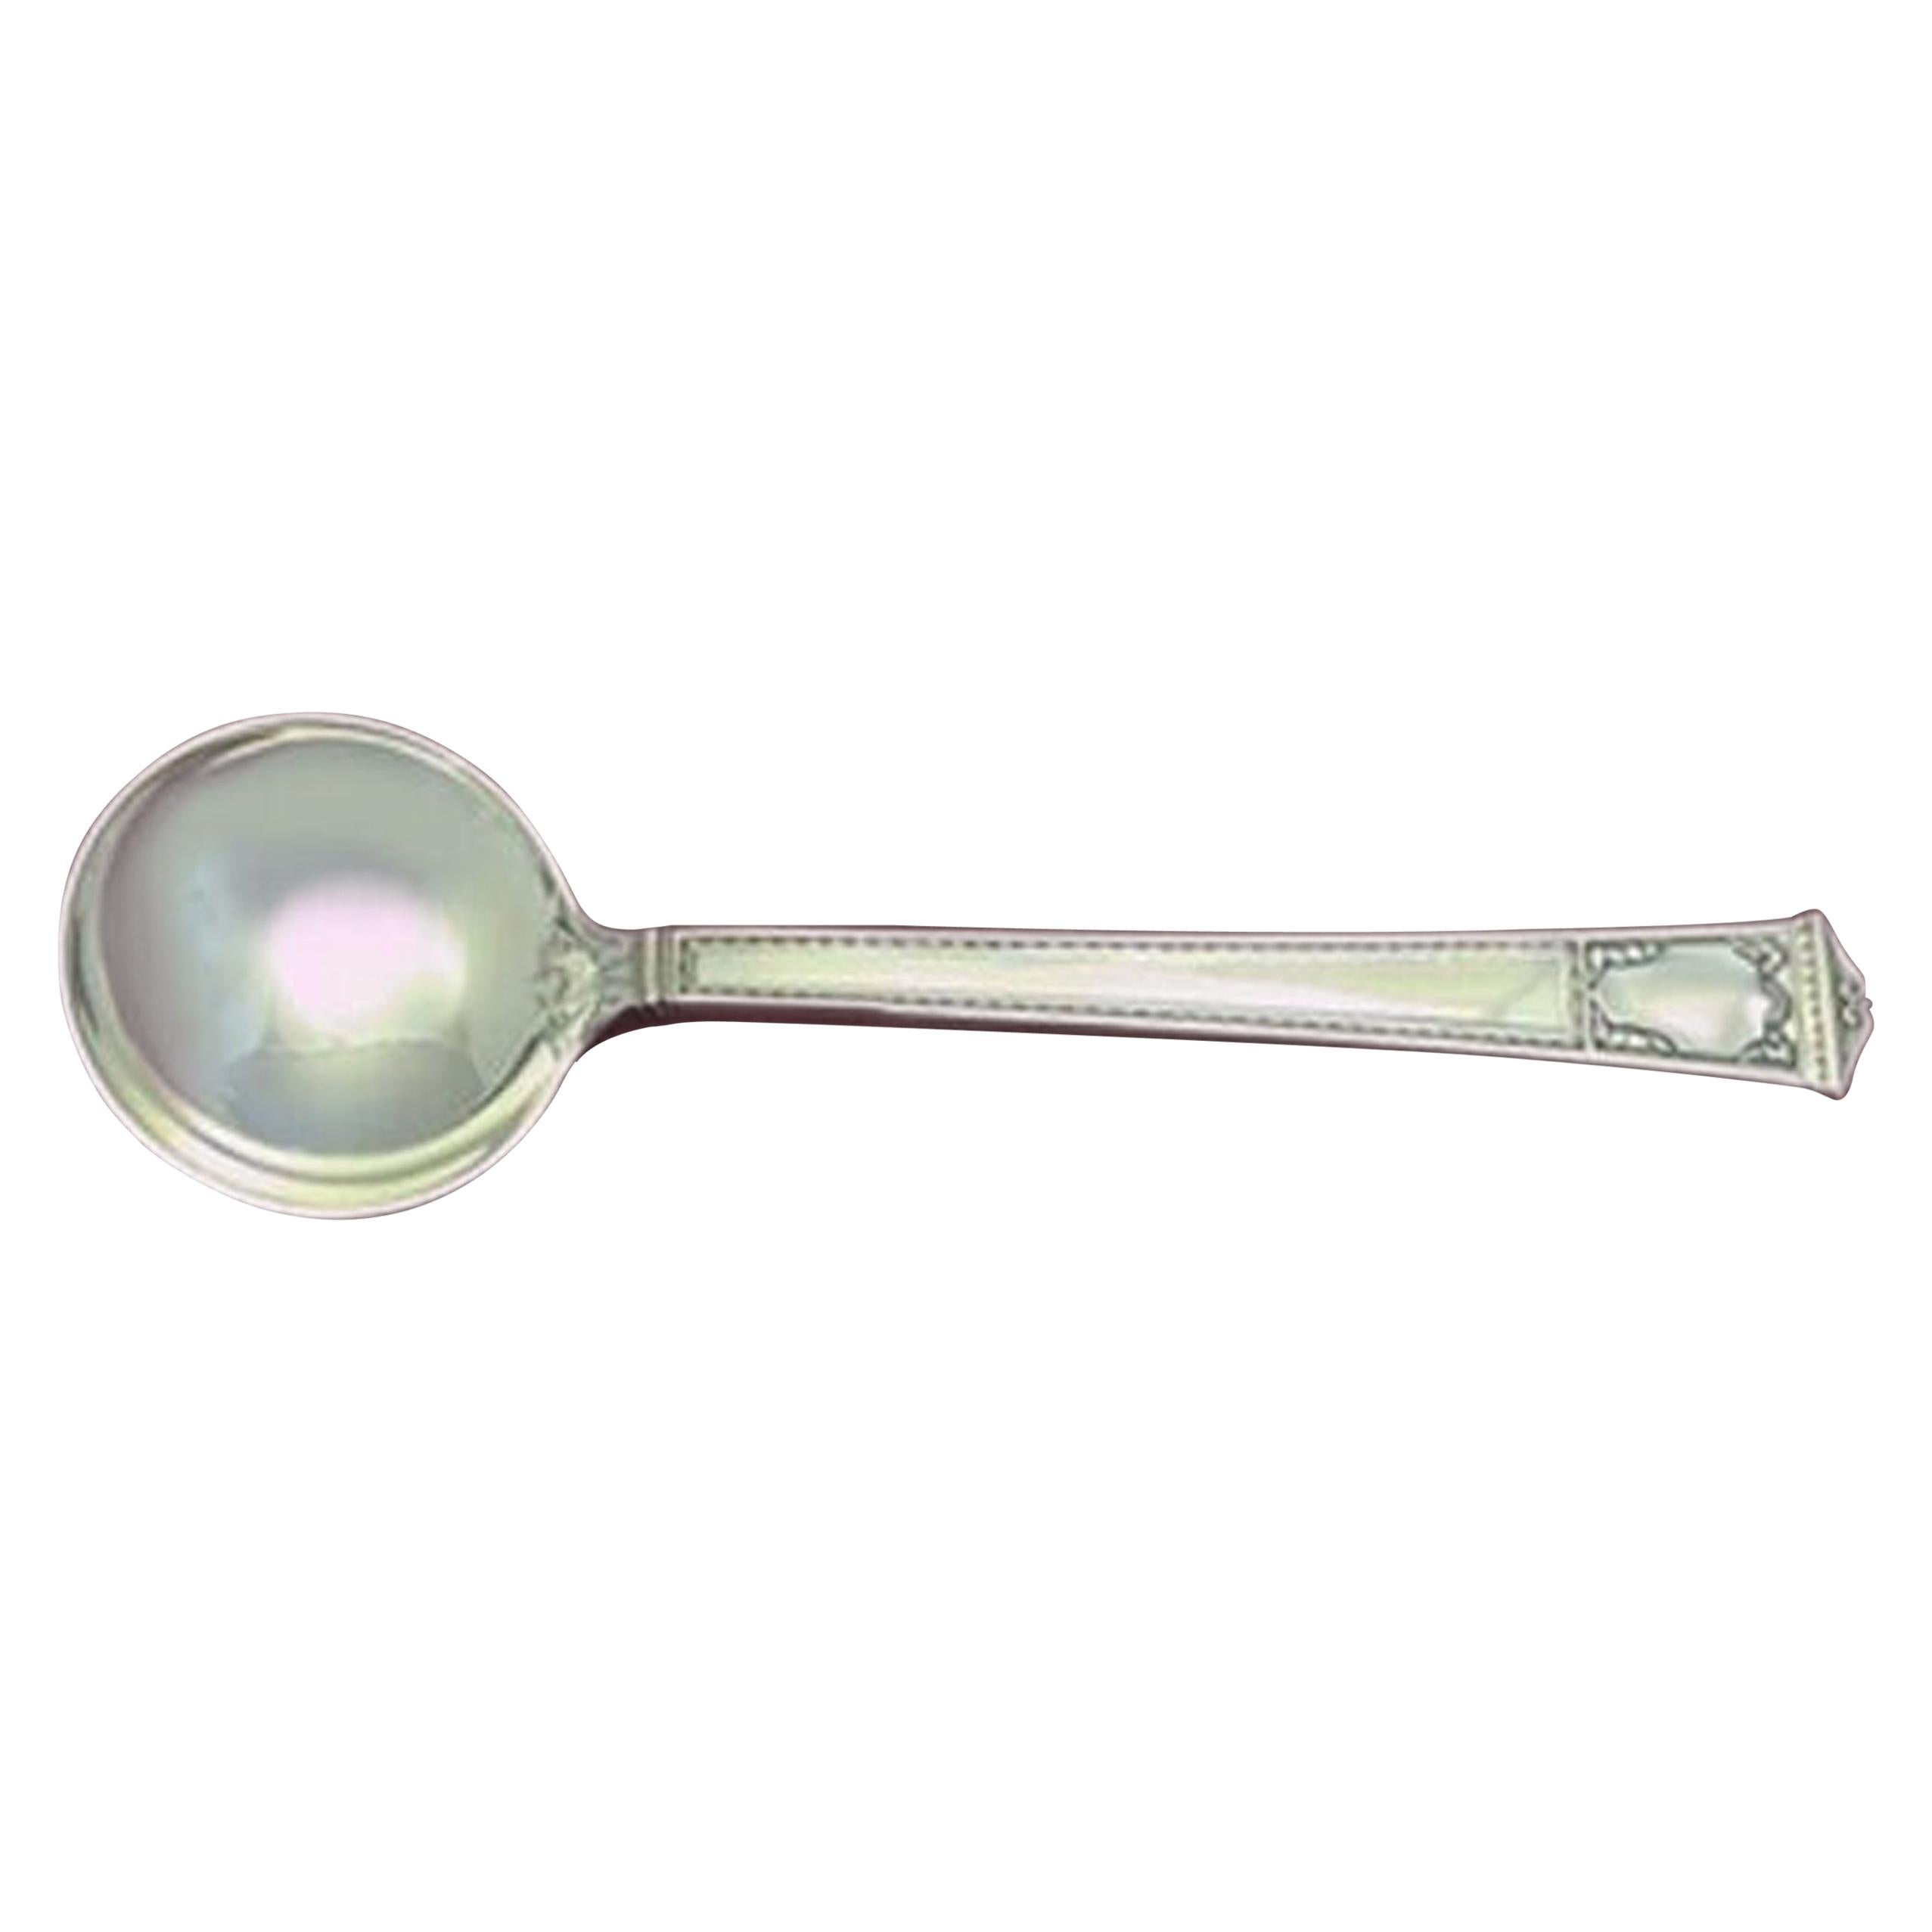 San Lorenzo by Tiffany & Co. Sterling Silver Bouillon Soup Spoon